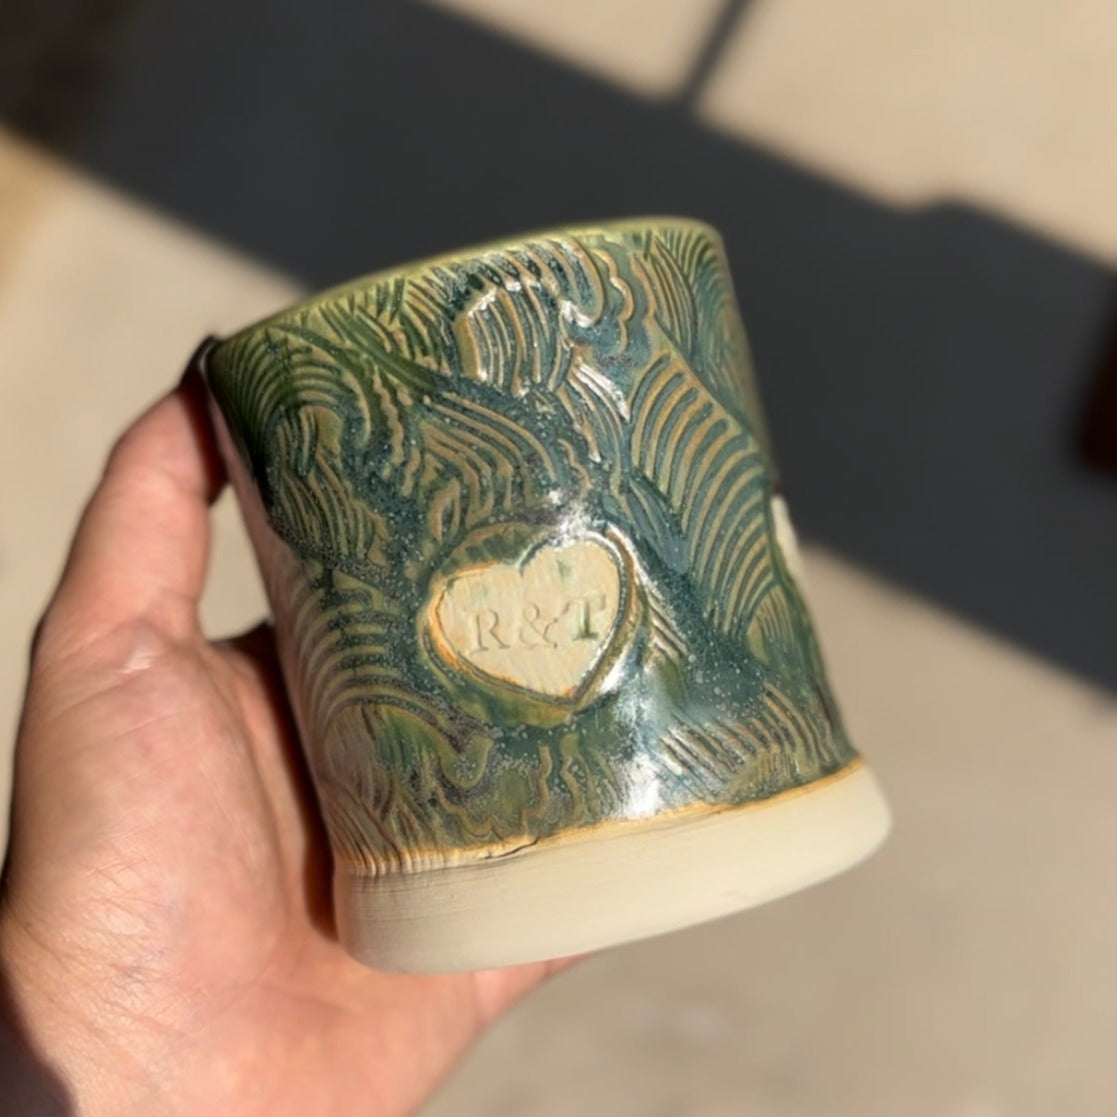 Pottery Workshop: Slab Built Cups